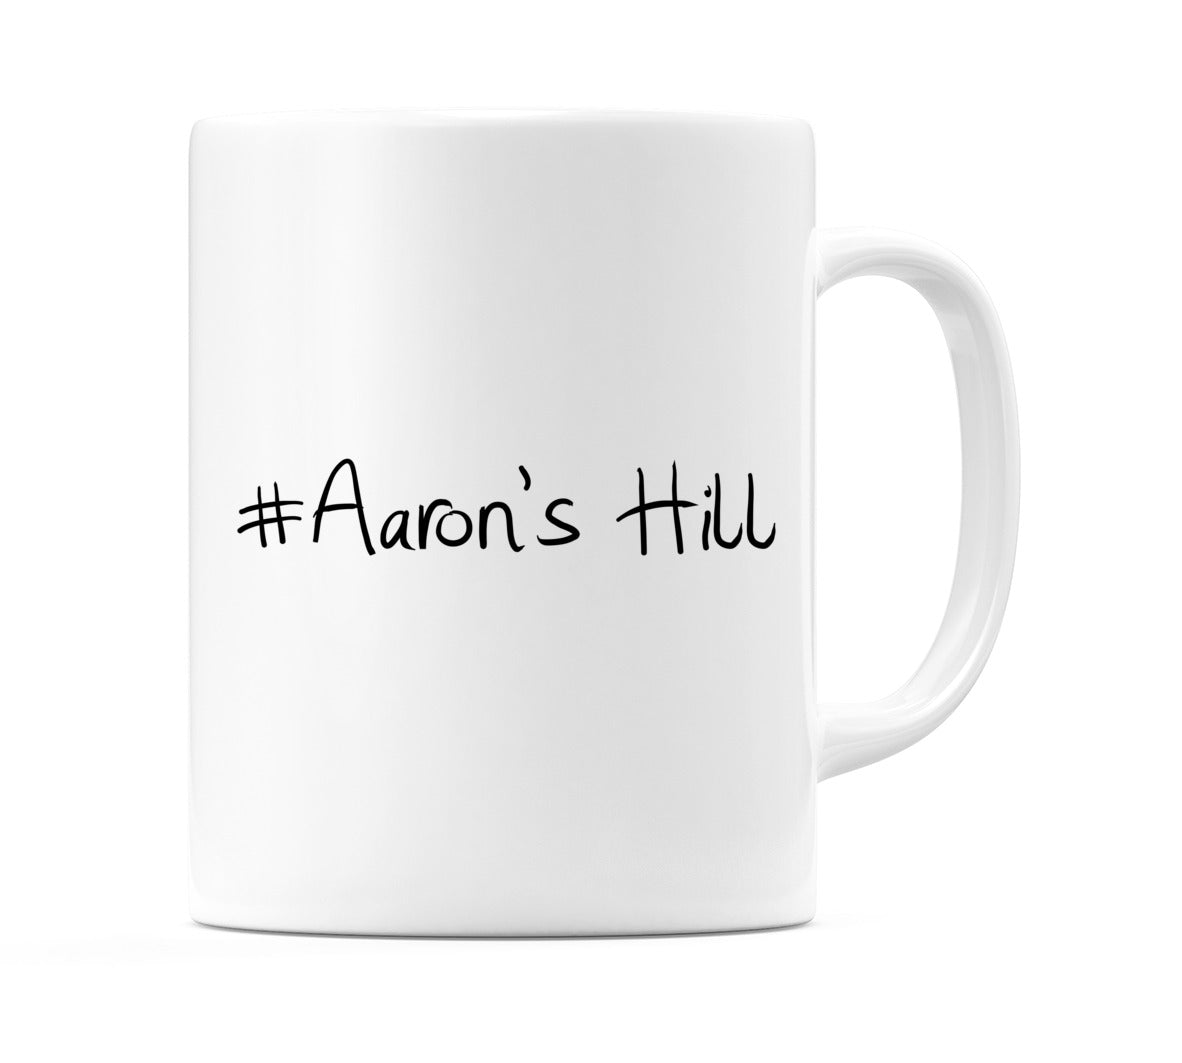 #Aaron's Hill Mug